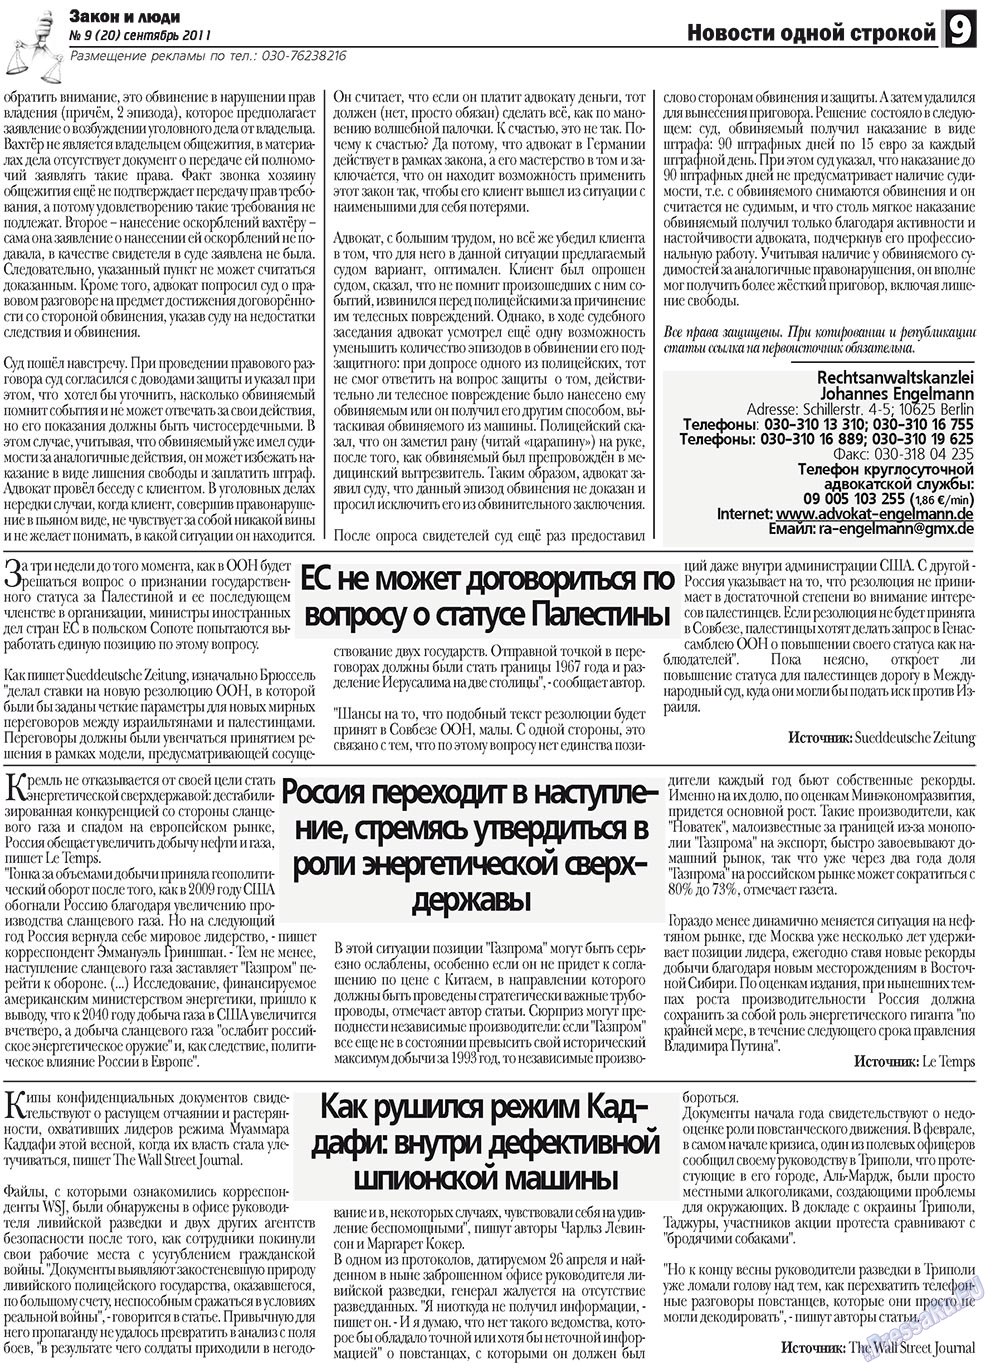 Закон и люди, газета. 2011 №9 стр.9